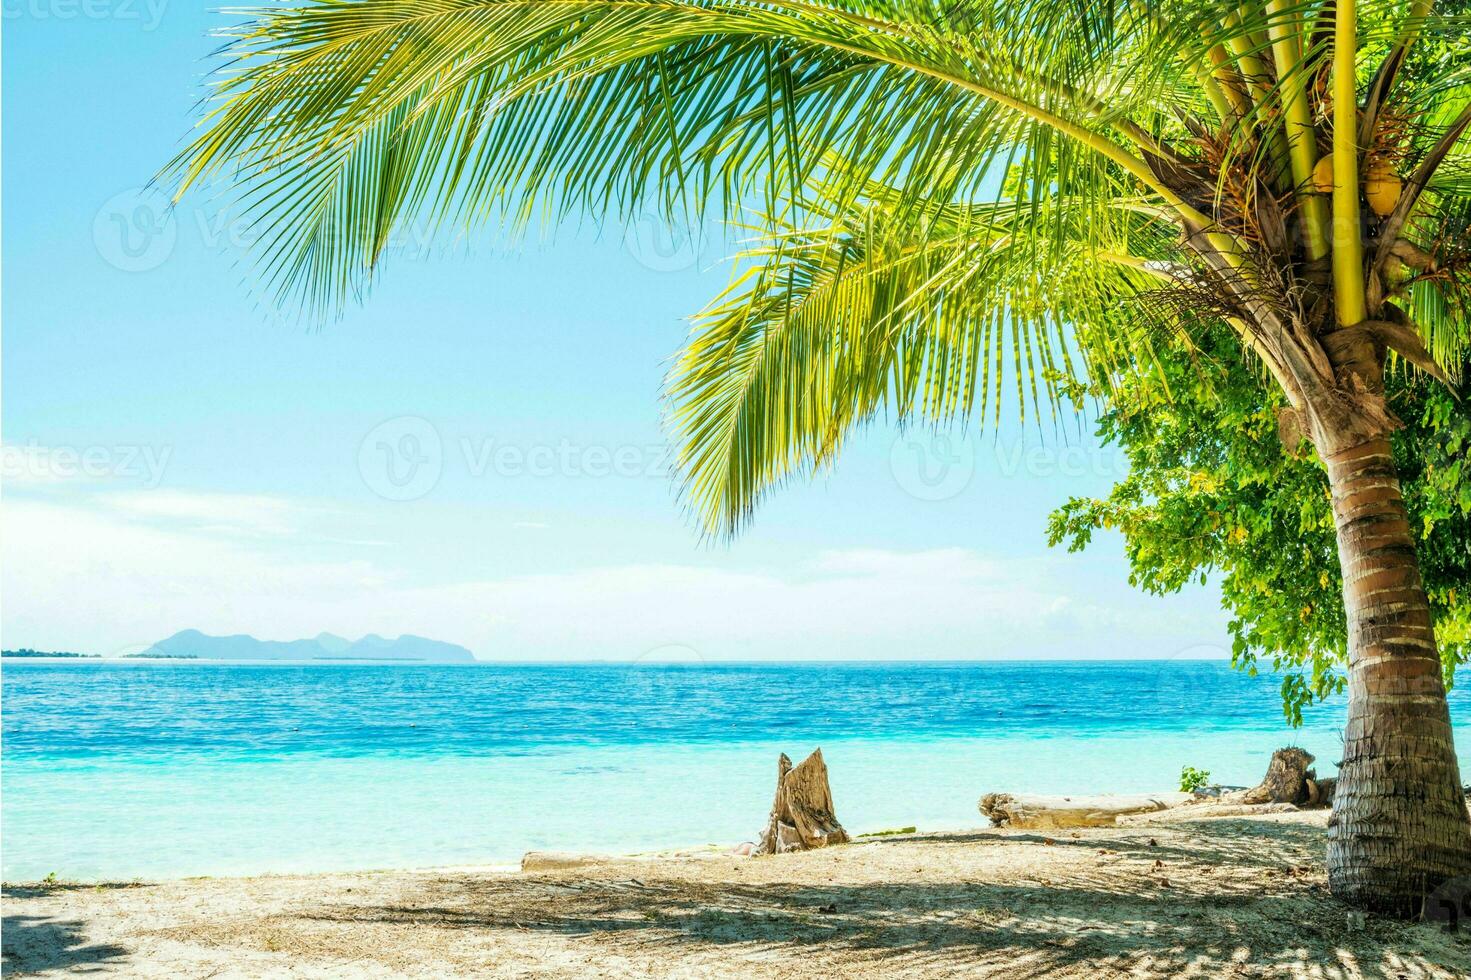 tranquilo tropical playa con palma arboles y azul mar. foto